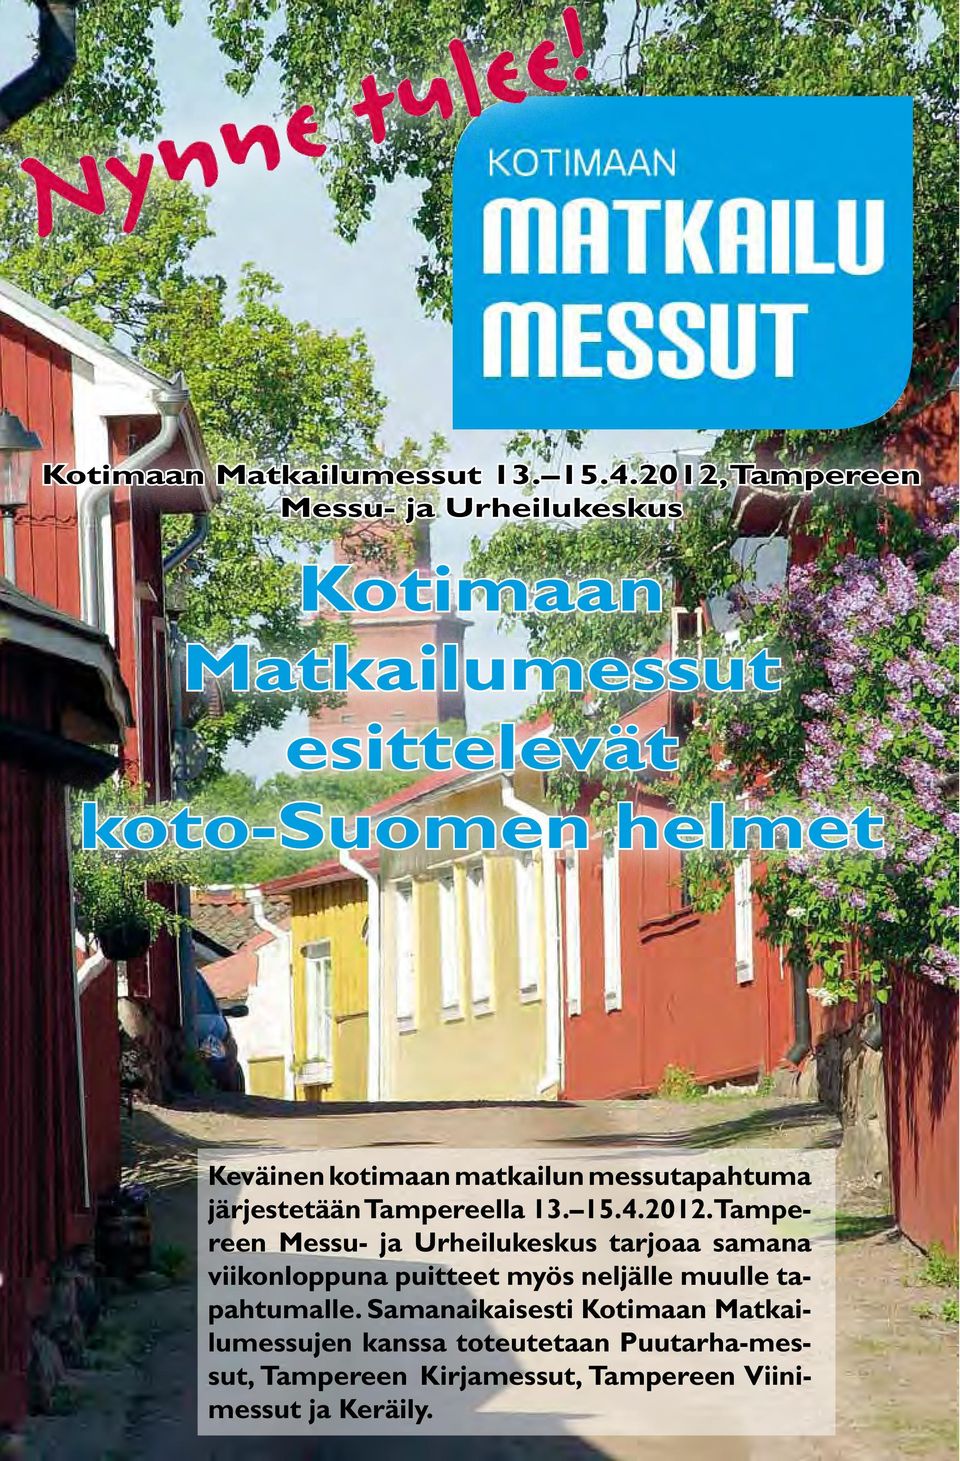 kotimaan matkailun messutapahtuma järjestetään Tampereella 13. 15.4.2012.